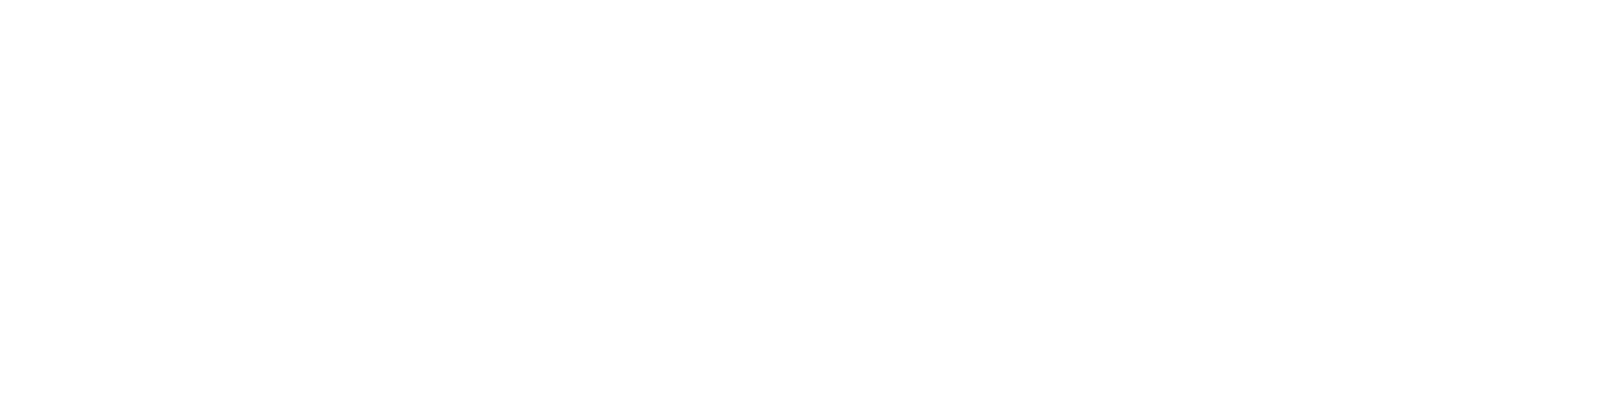 Happinet Logo groß für dunkle Hintergründe (transparentes PNG)